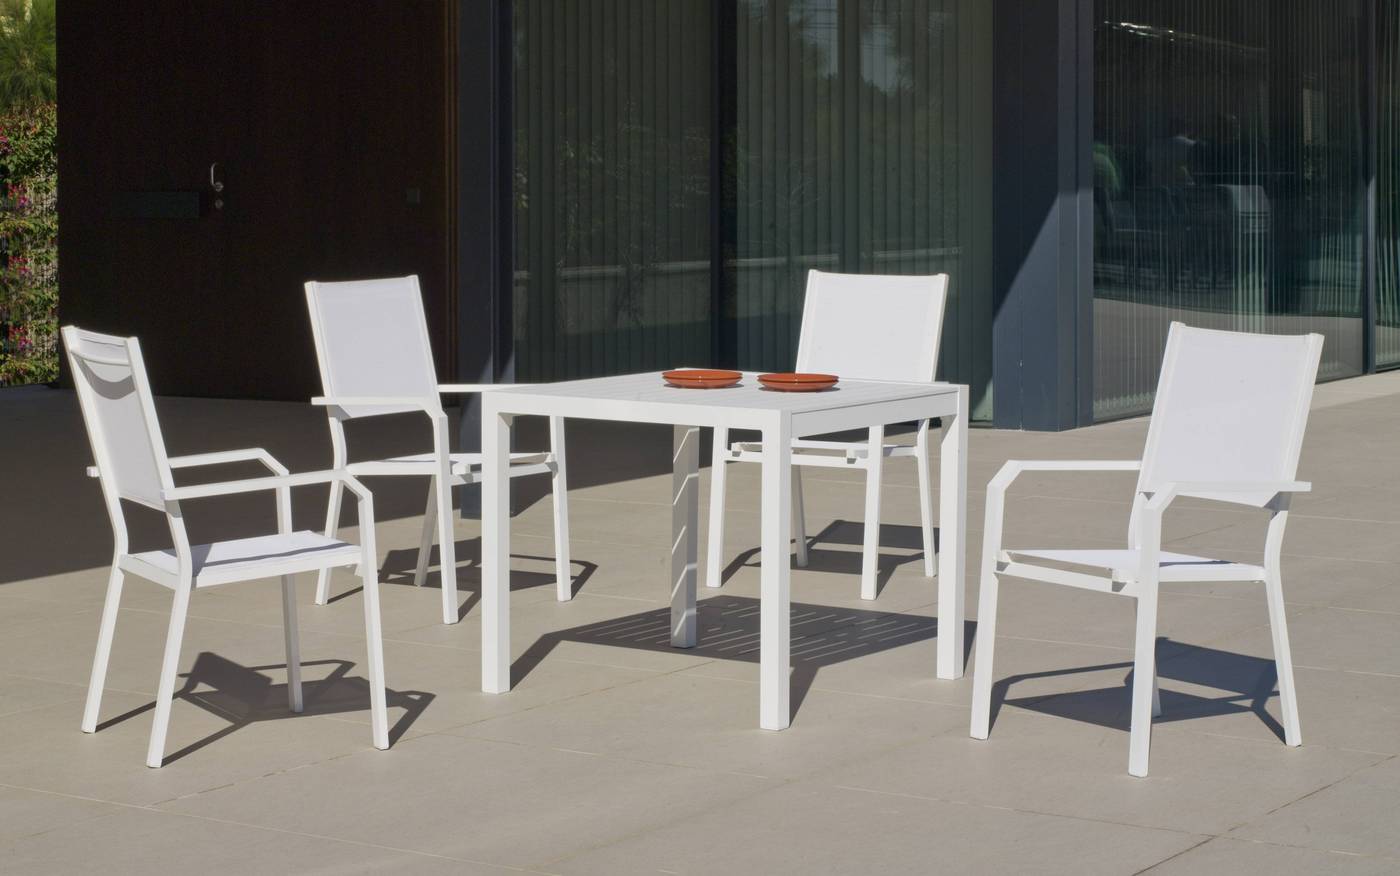 Conjunto aluminio luxe: Mesa cuadrada 90 cm + 4 sillones de textilen. Disponible en color blanco, antracita, champagne, plata o marrón.